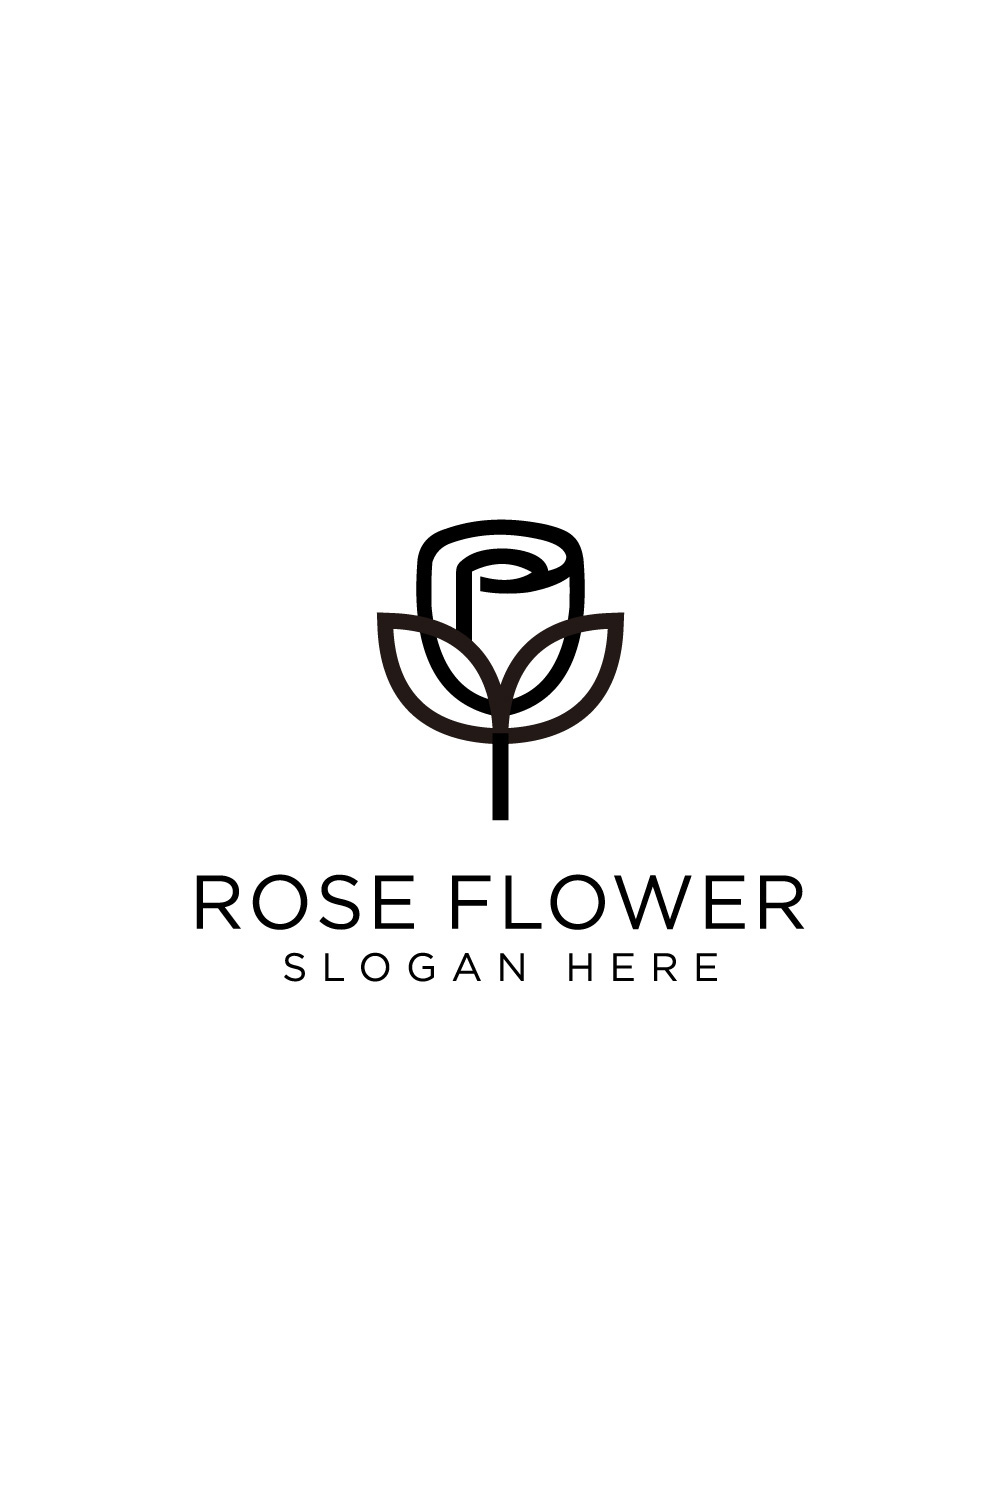 rose flower logo vector design pinterest preview image.